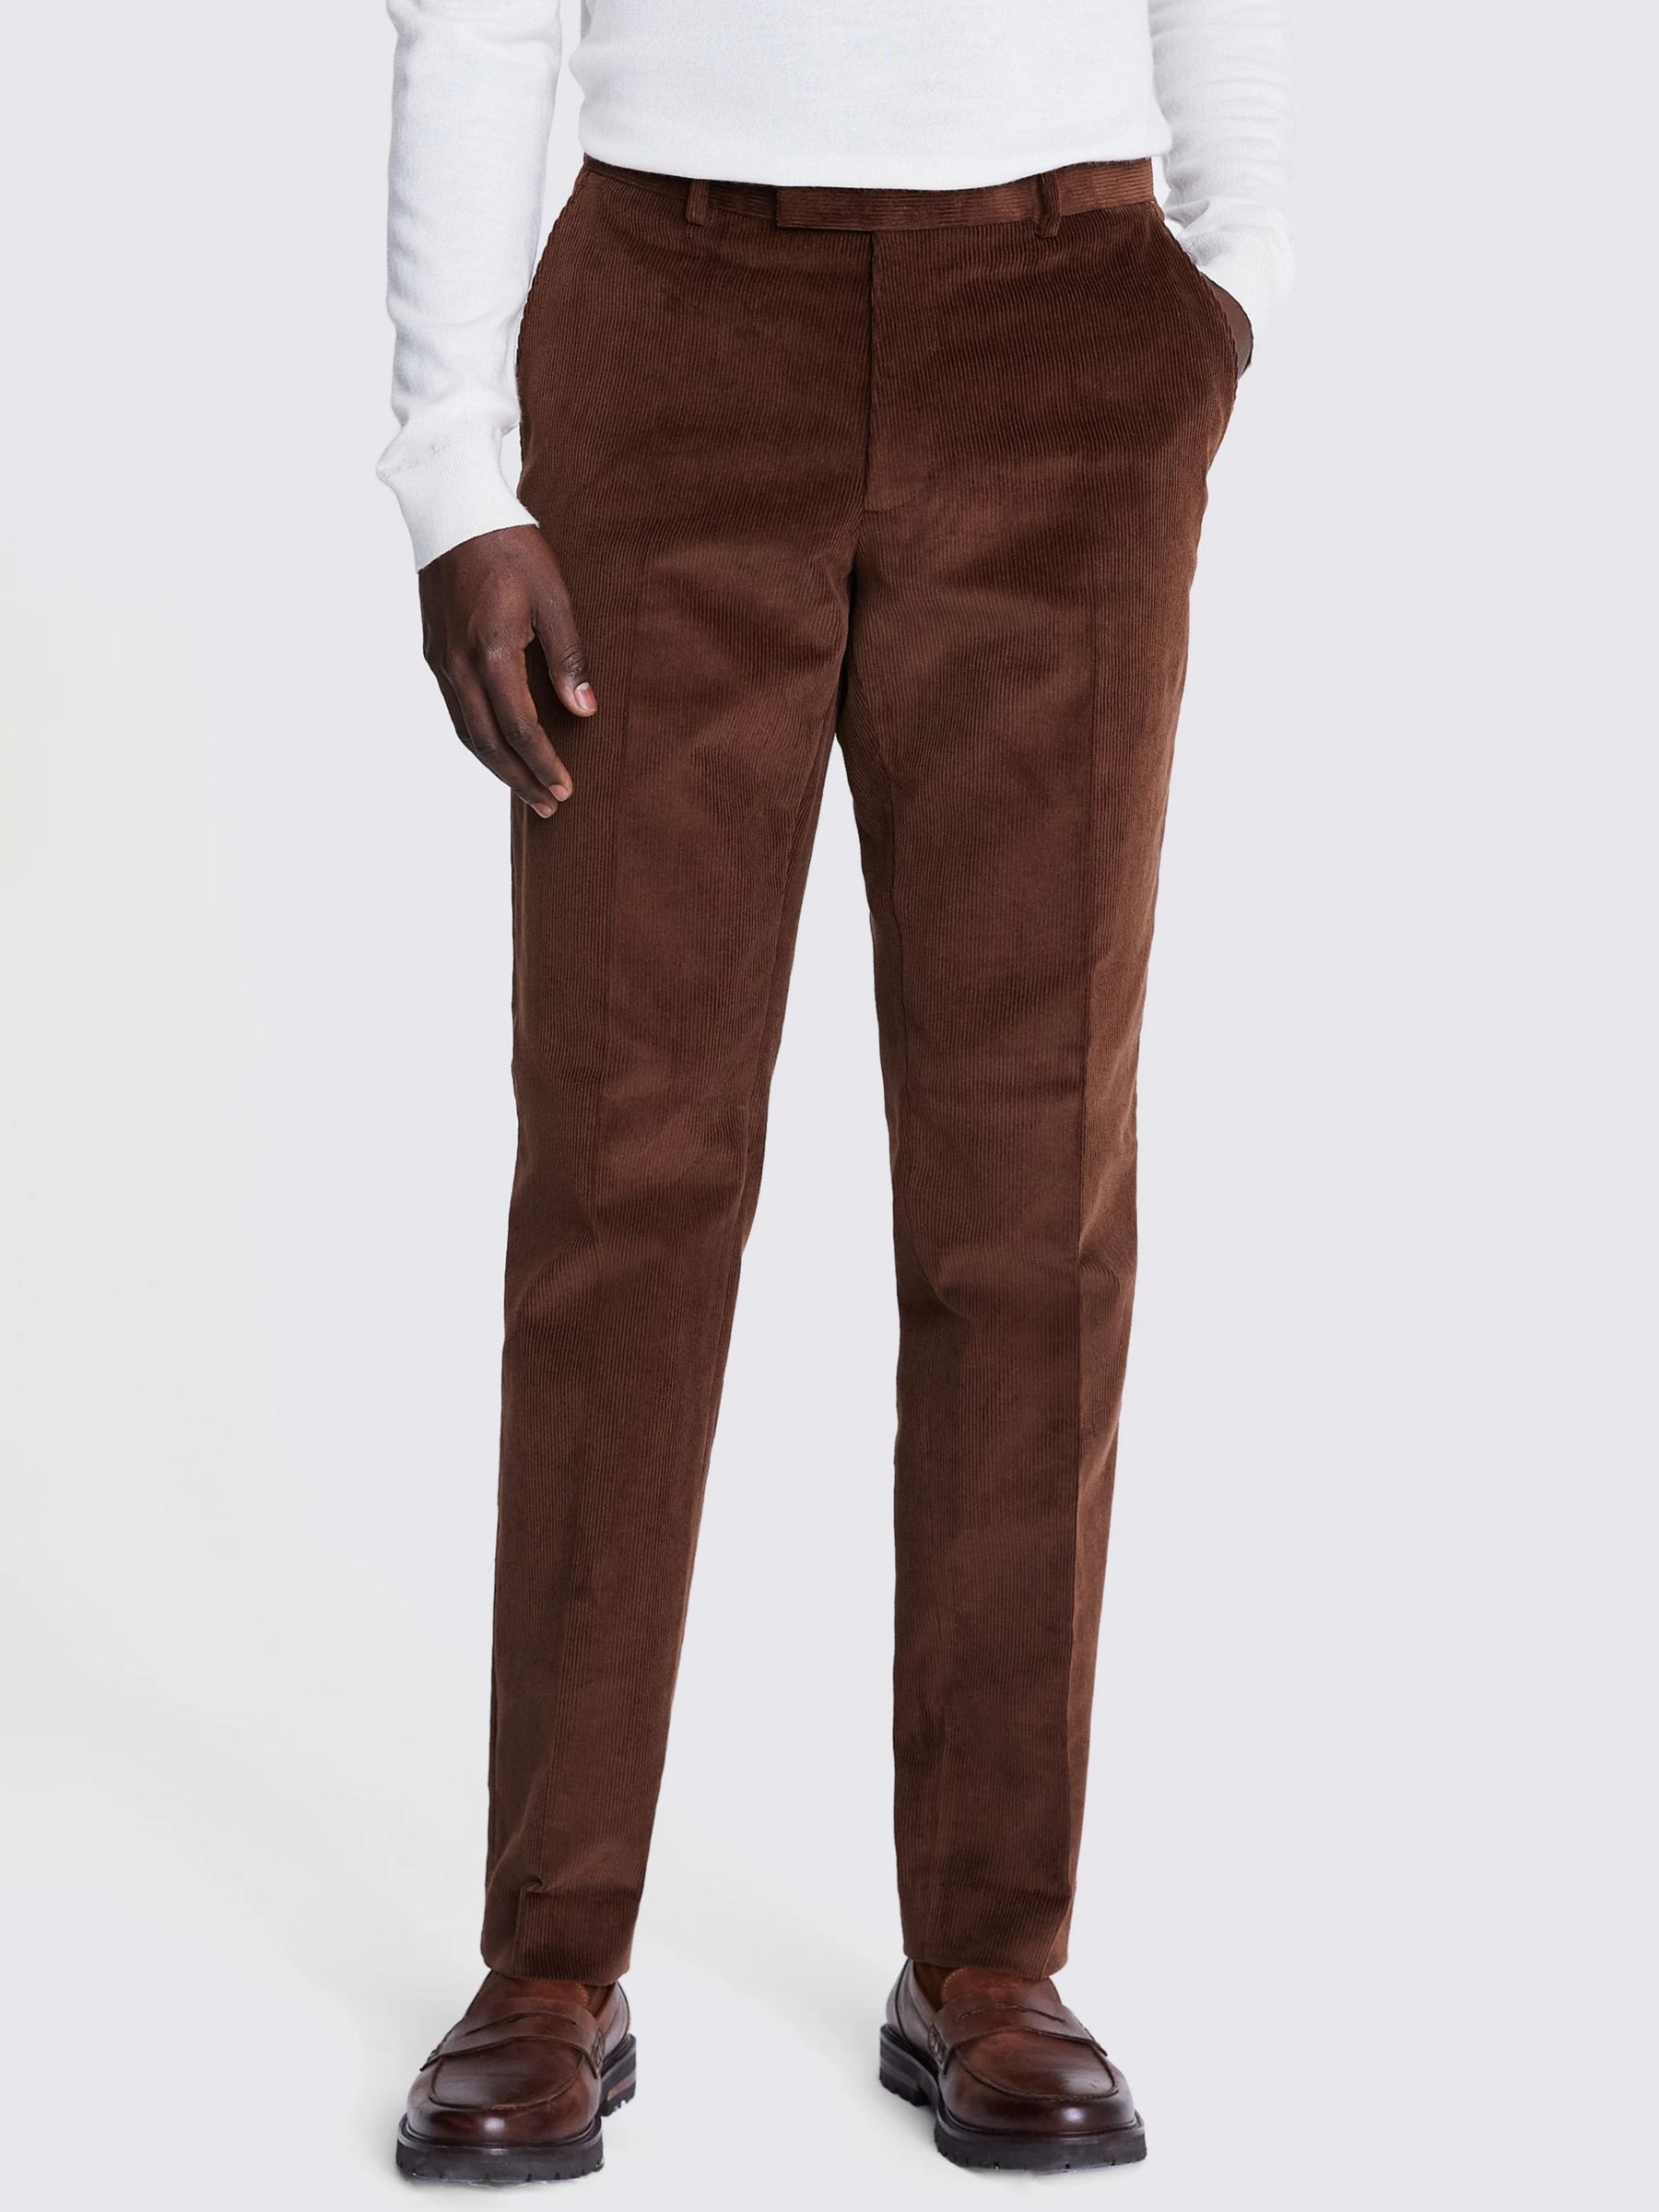 Moss Slim Fit Corduroy Suit Trousers, Copper, 38R